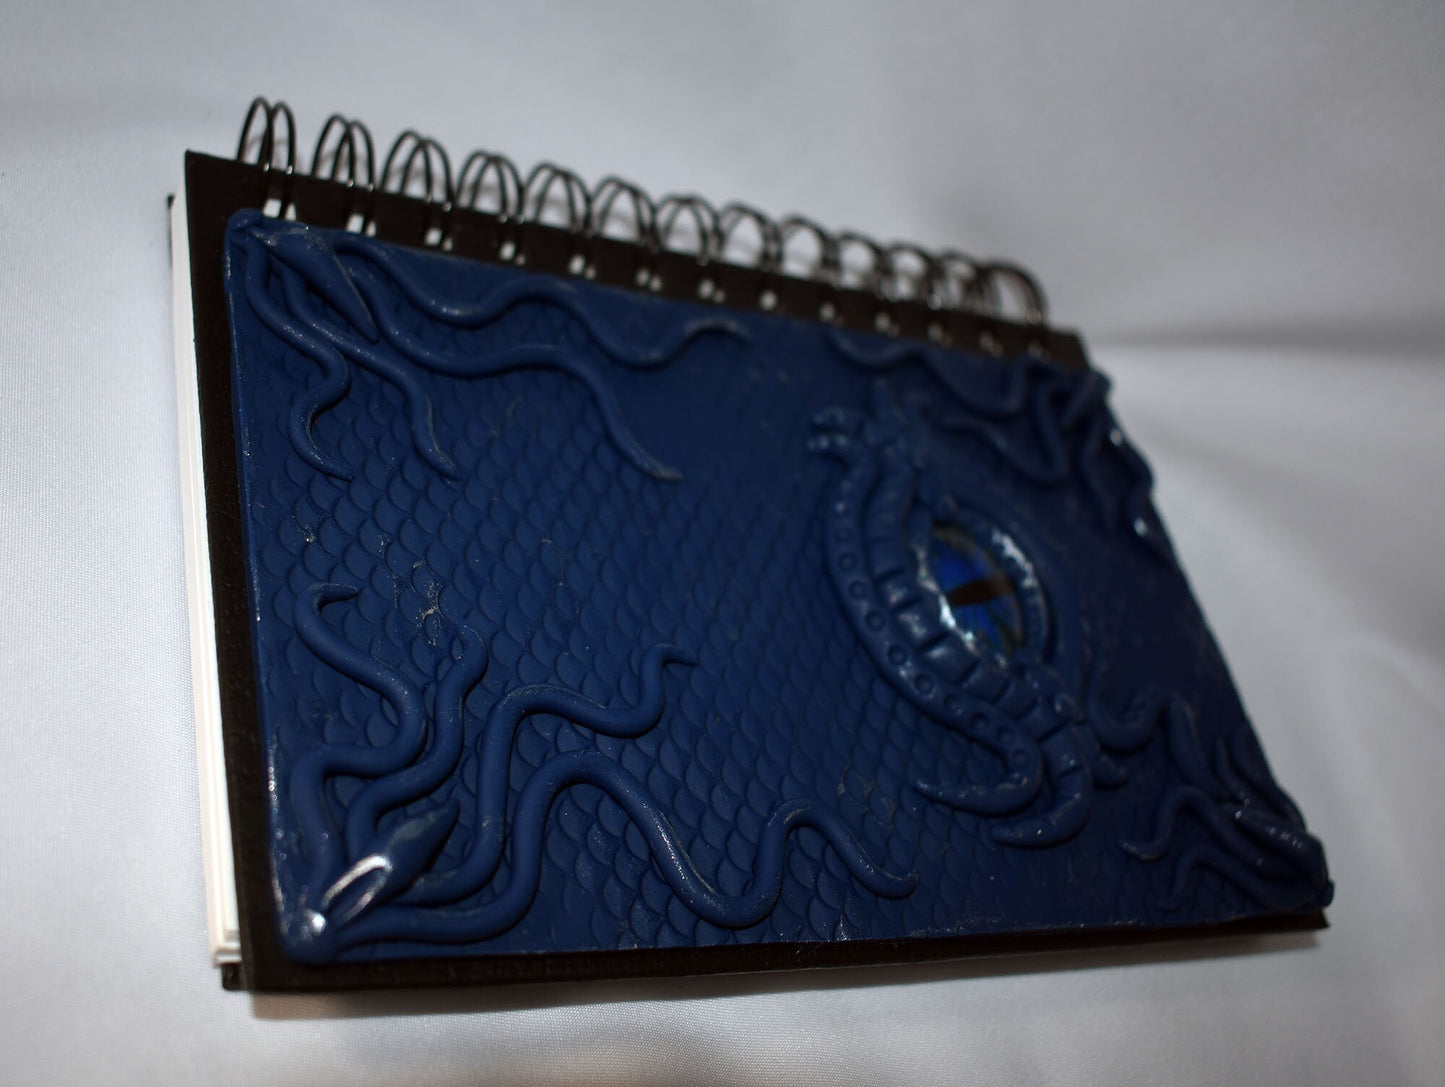 Blue Polymer Clay Dragon Eye Journal - 2-057